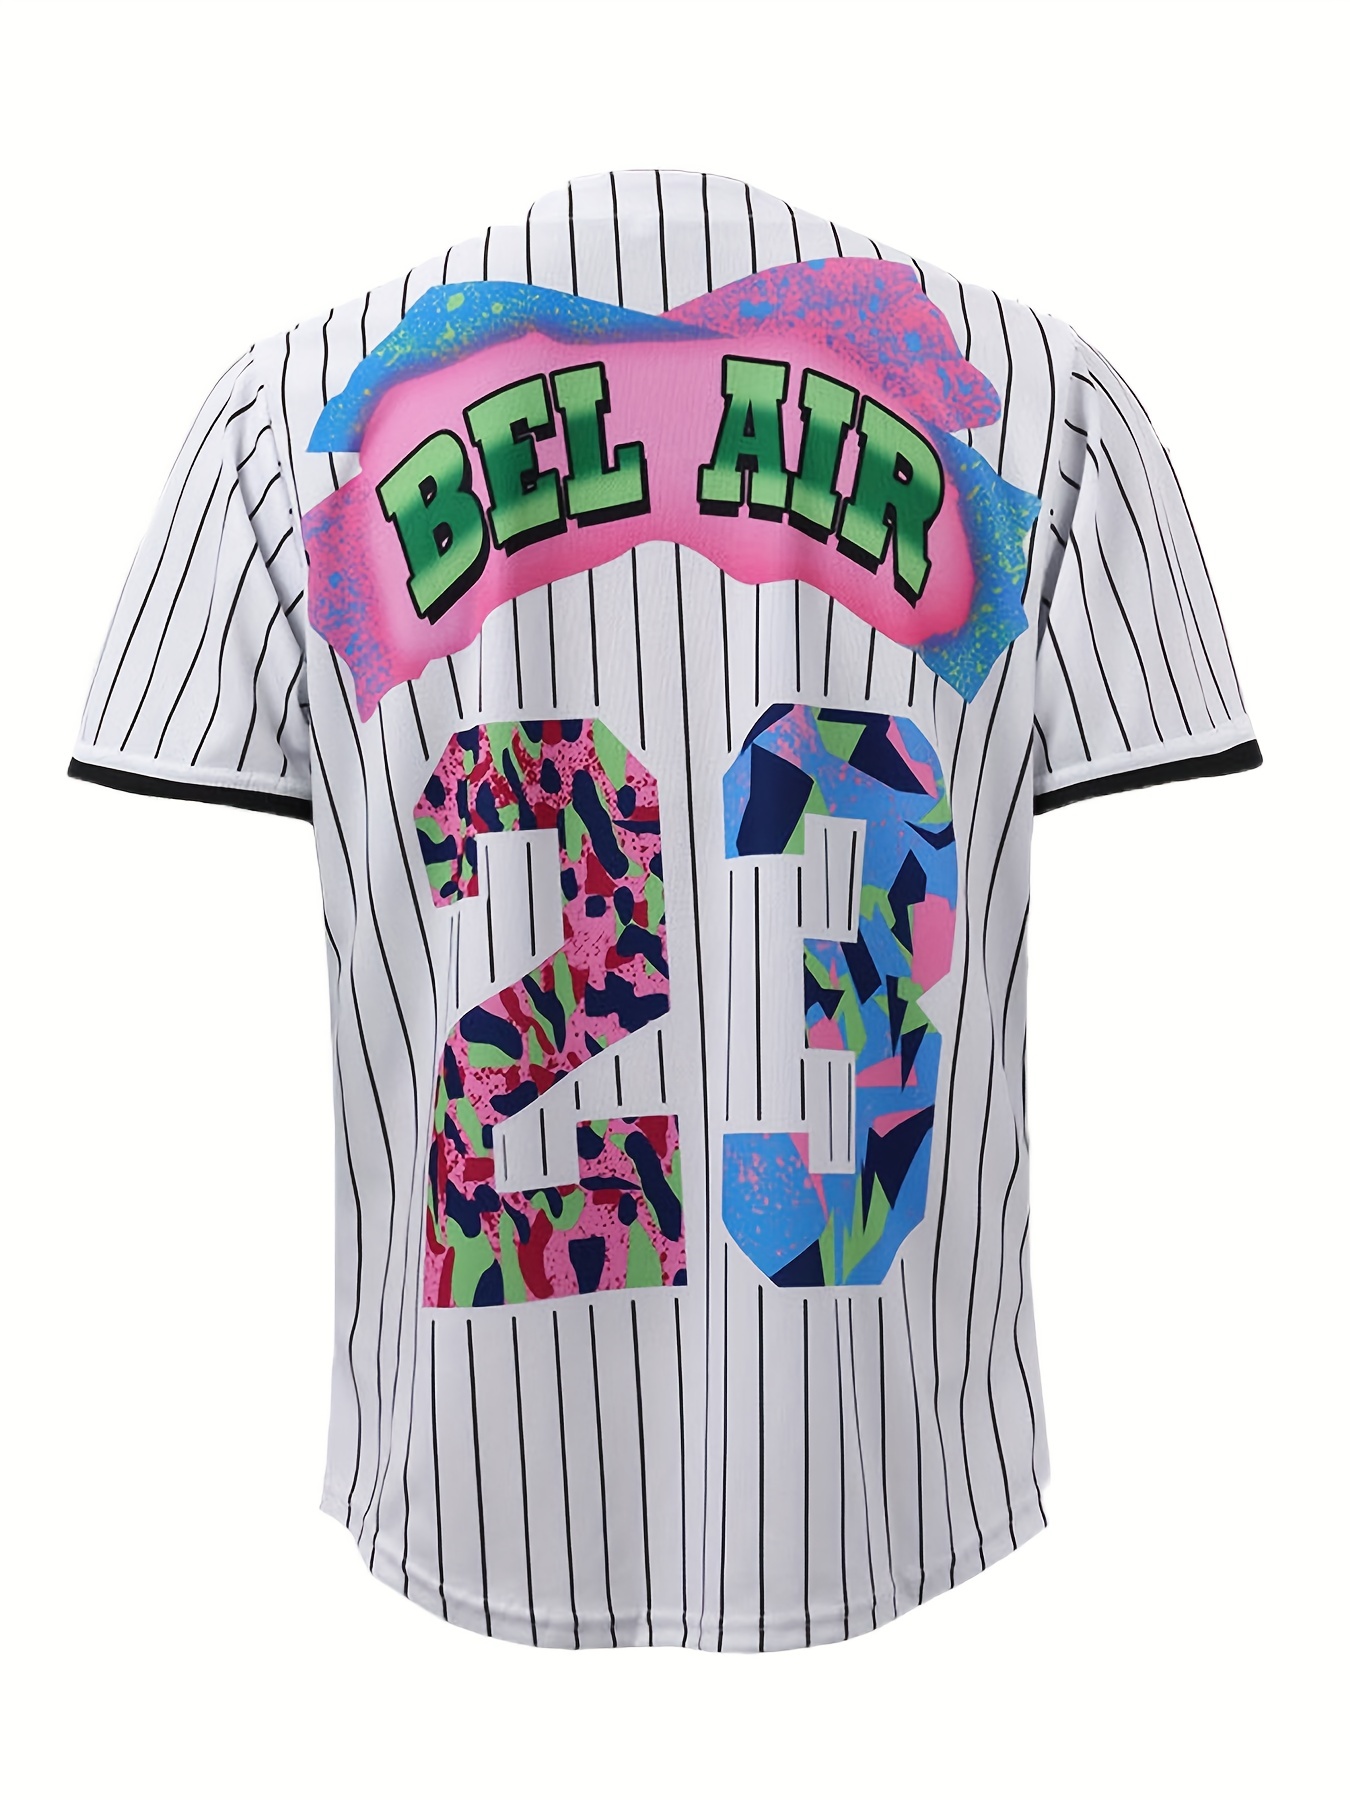 90s Bel Air 23 Printed Baseball Jersey